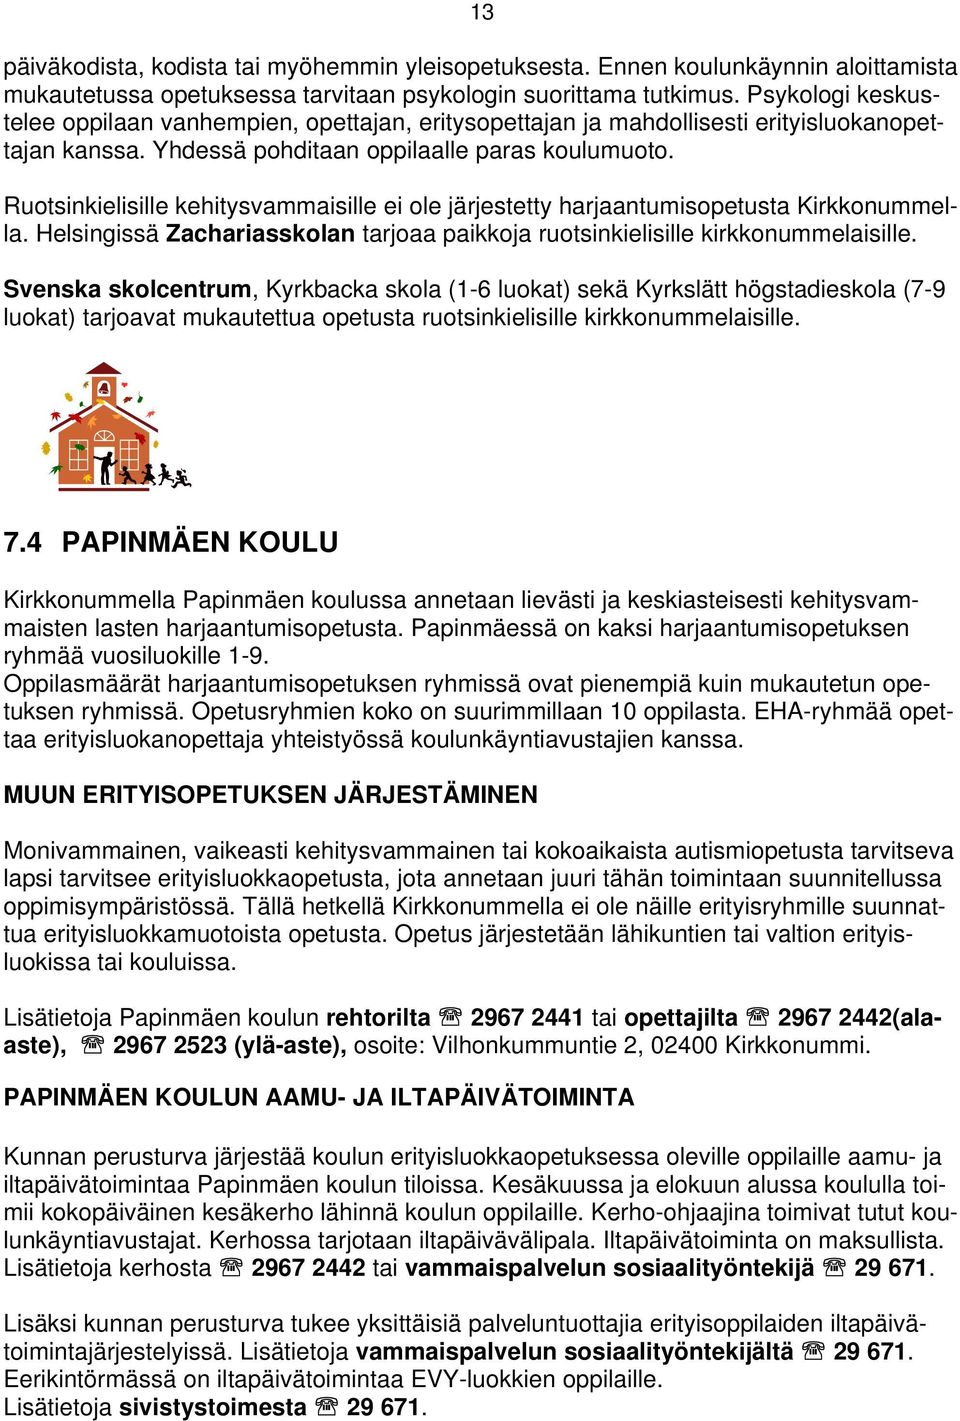 Ruotsinkielisille kehitysvammaisille ei ole järjestetty harjaantumisopetusta Kirkkonummella. Helsingissä Zachariasskolan tarjoaa paikkoja ruotsinkielisille kirkkonummelaisille.